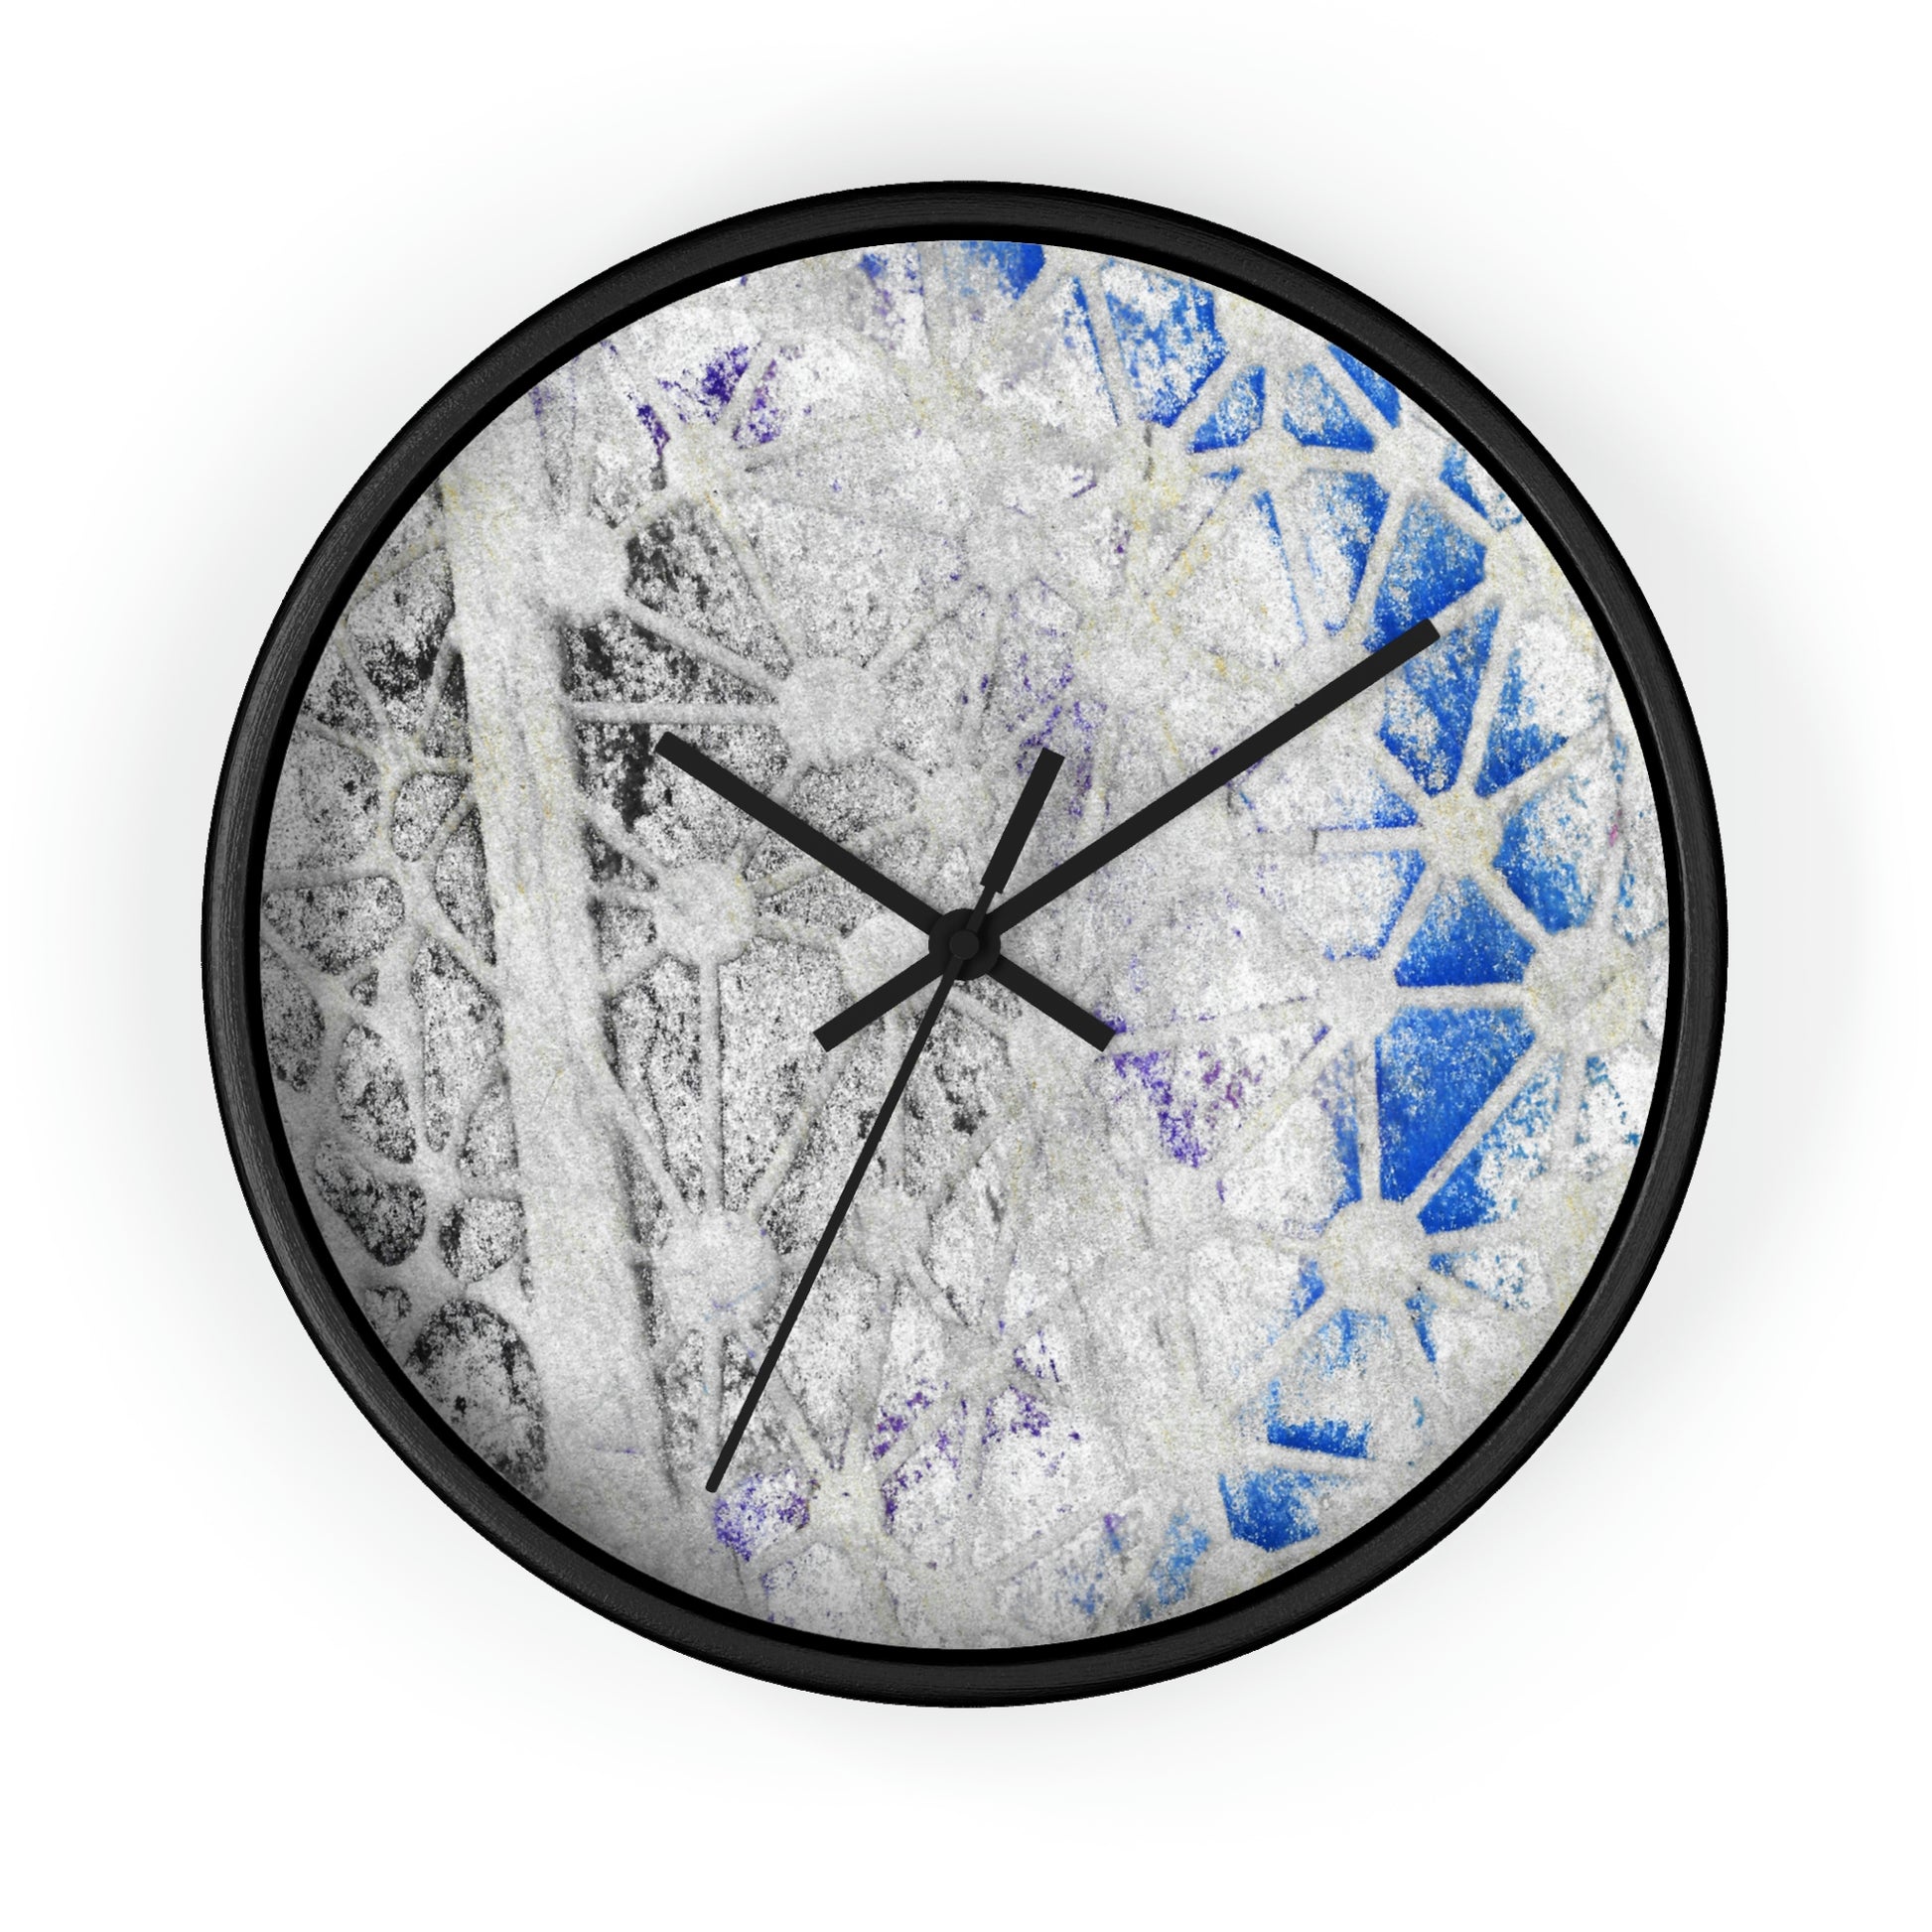 Moonlight Wall Clock - Alja Design